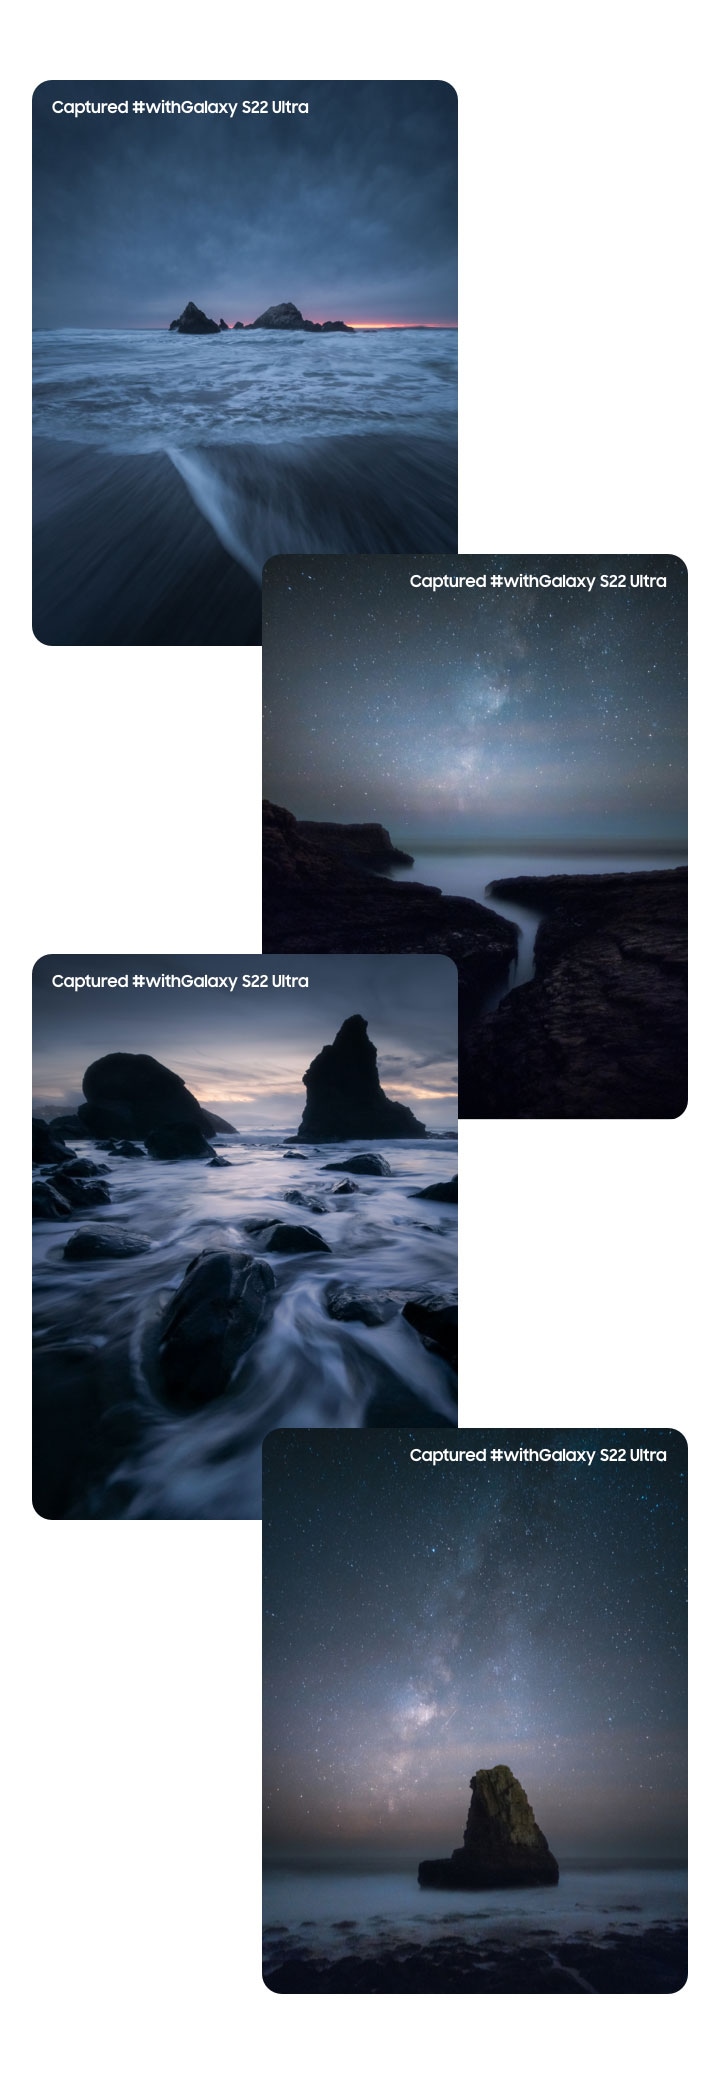 ภาพเรียงต่อกันของกองหินริมชายหาดที่อยู่ตรงหน้าท้องฟ้าที่มีแสงดาวระยิบระยับ บันทึกด้วย #withGalaxy S22 Ultra